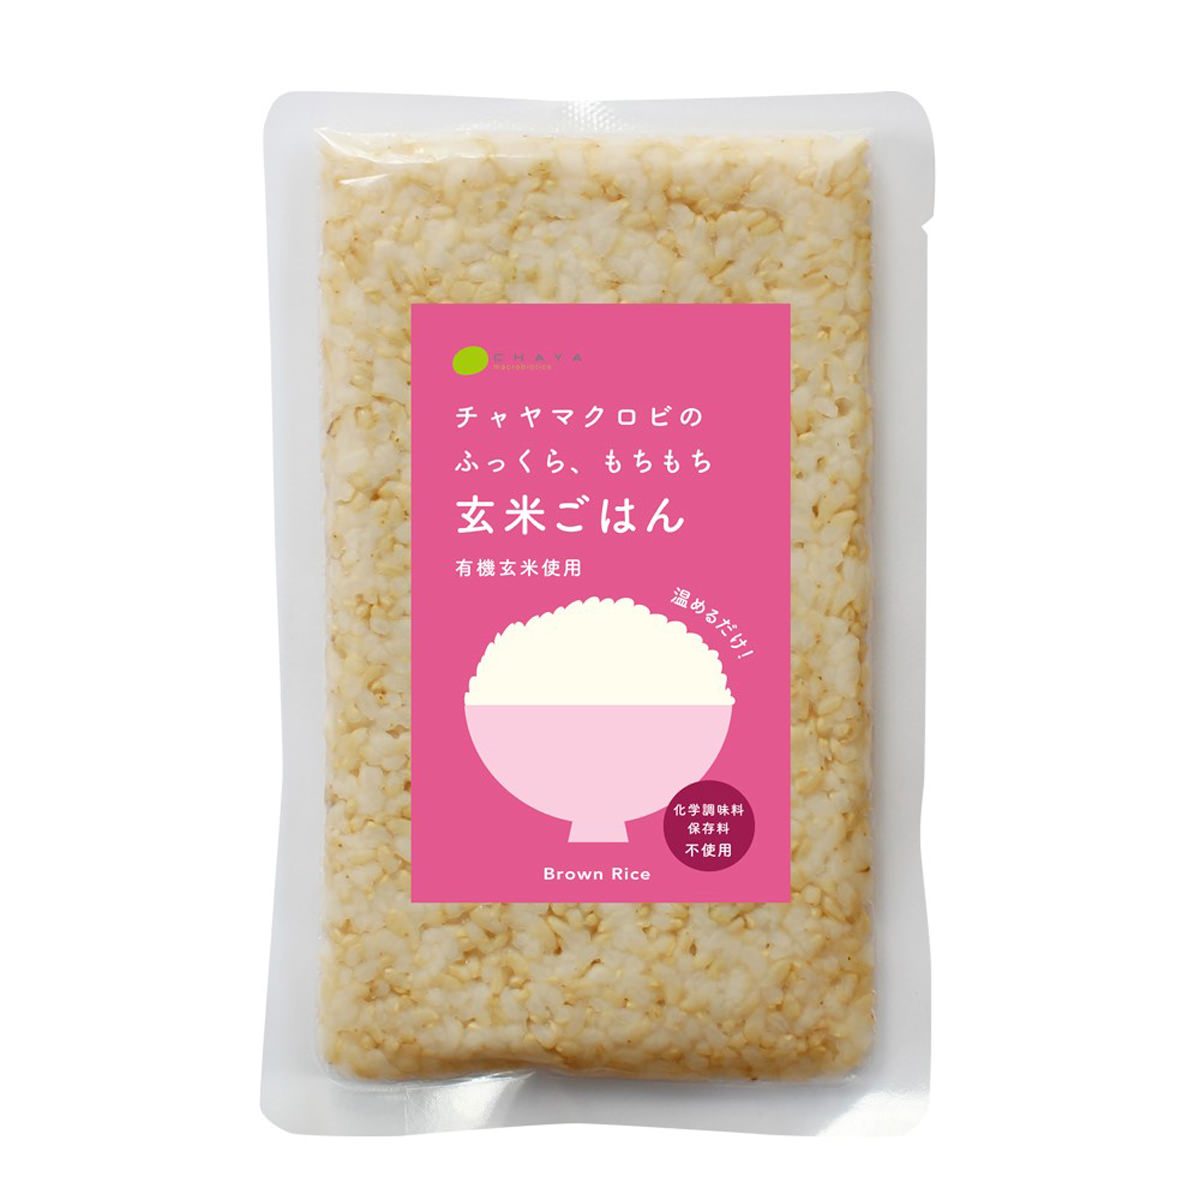 【10%割引】レトルトご飯 玄米ご飯 